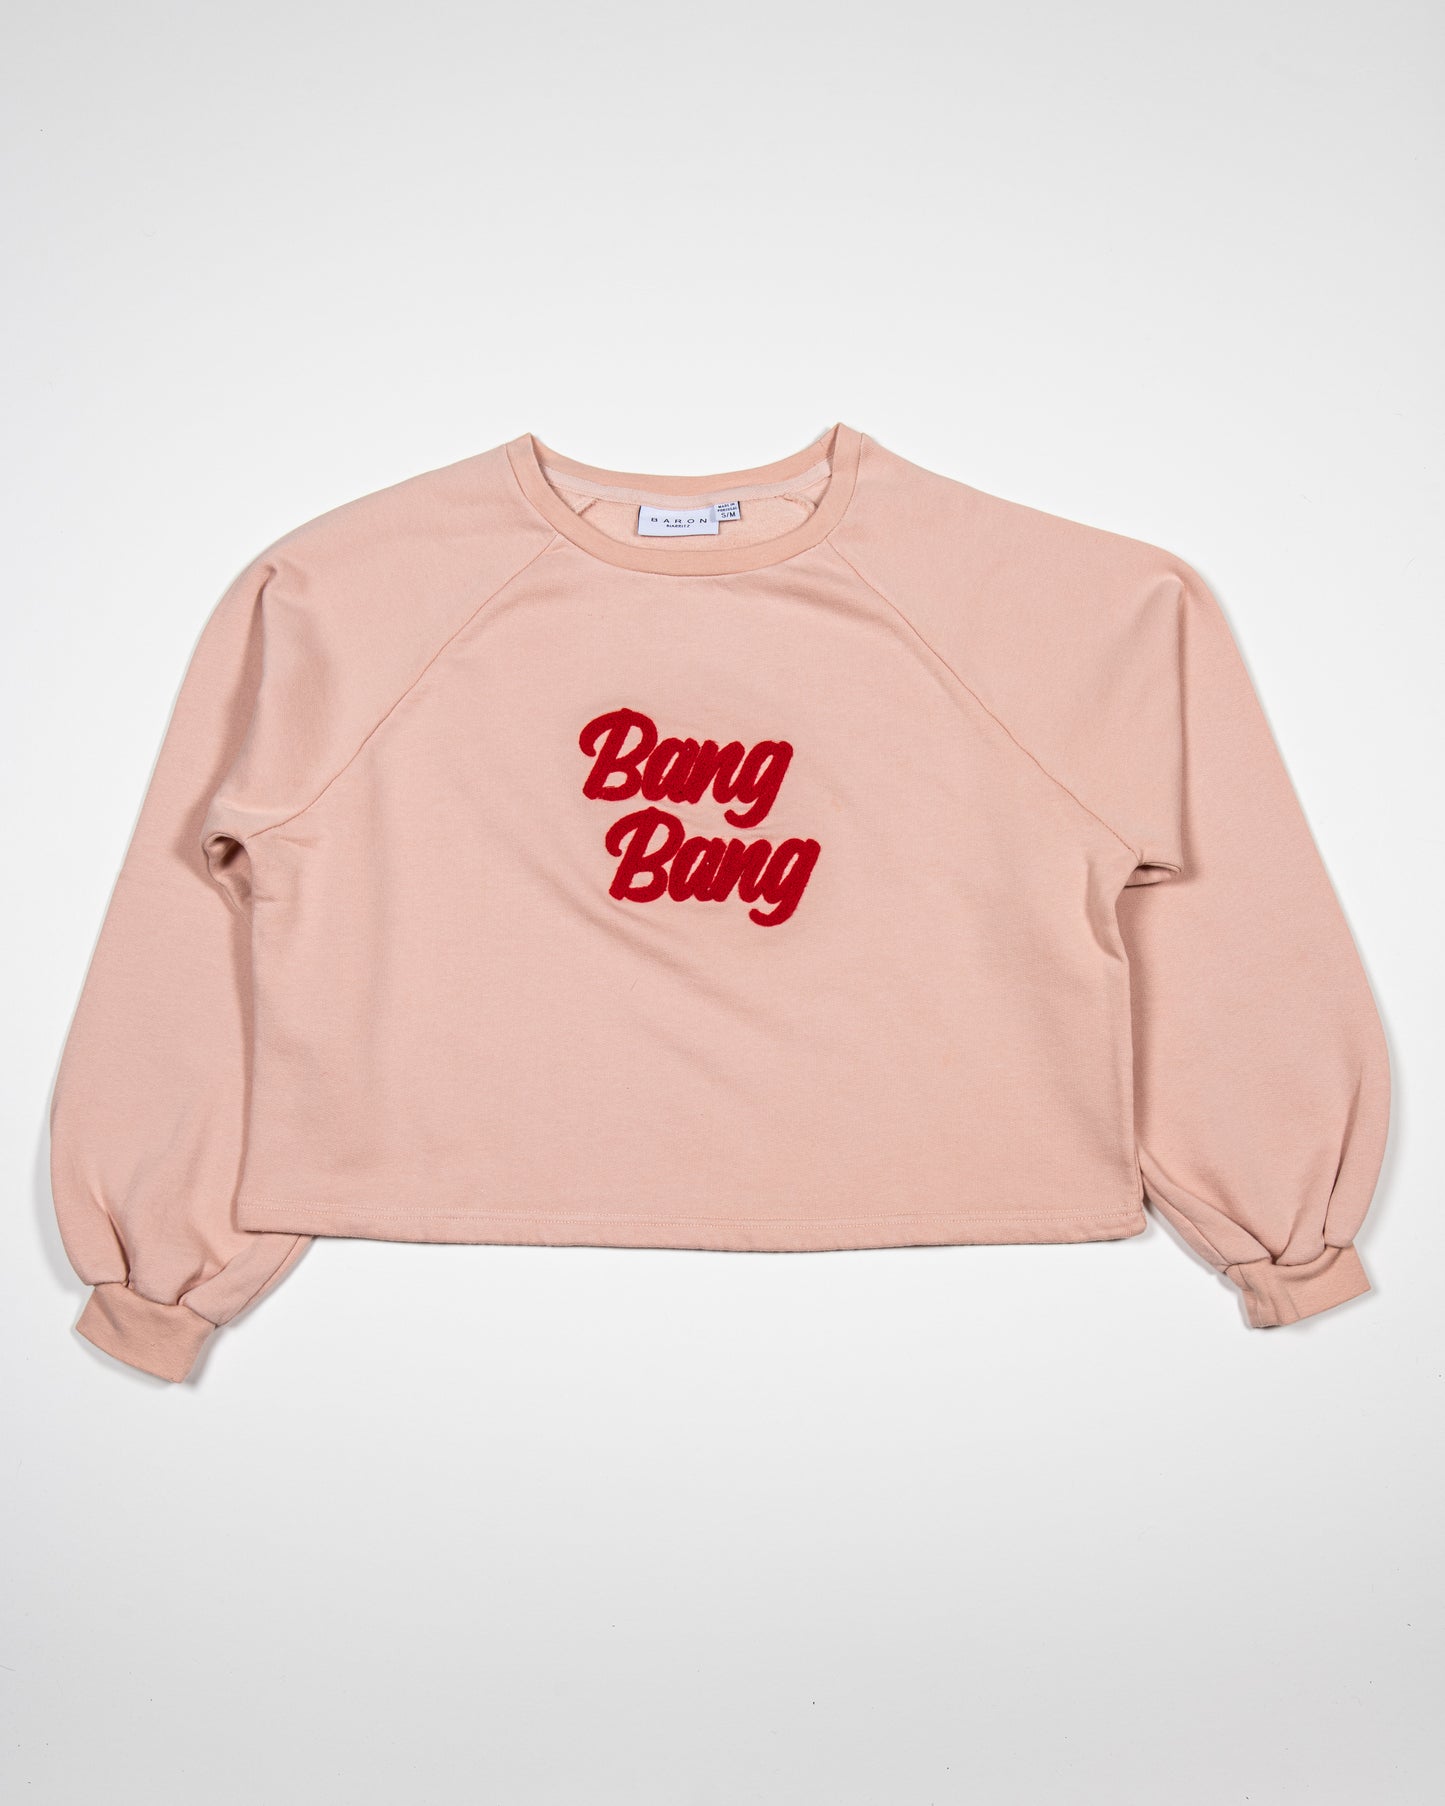 Sweat Crop top Coton Bio BANG BANG - Rose pastel